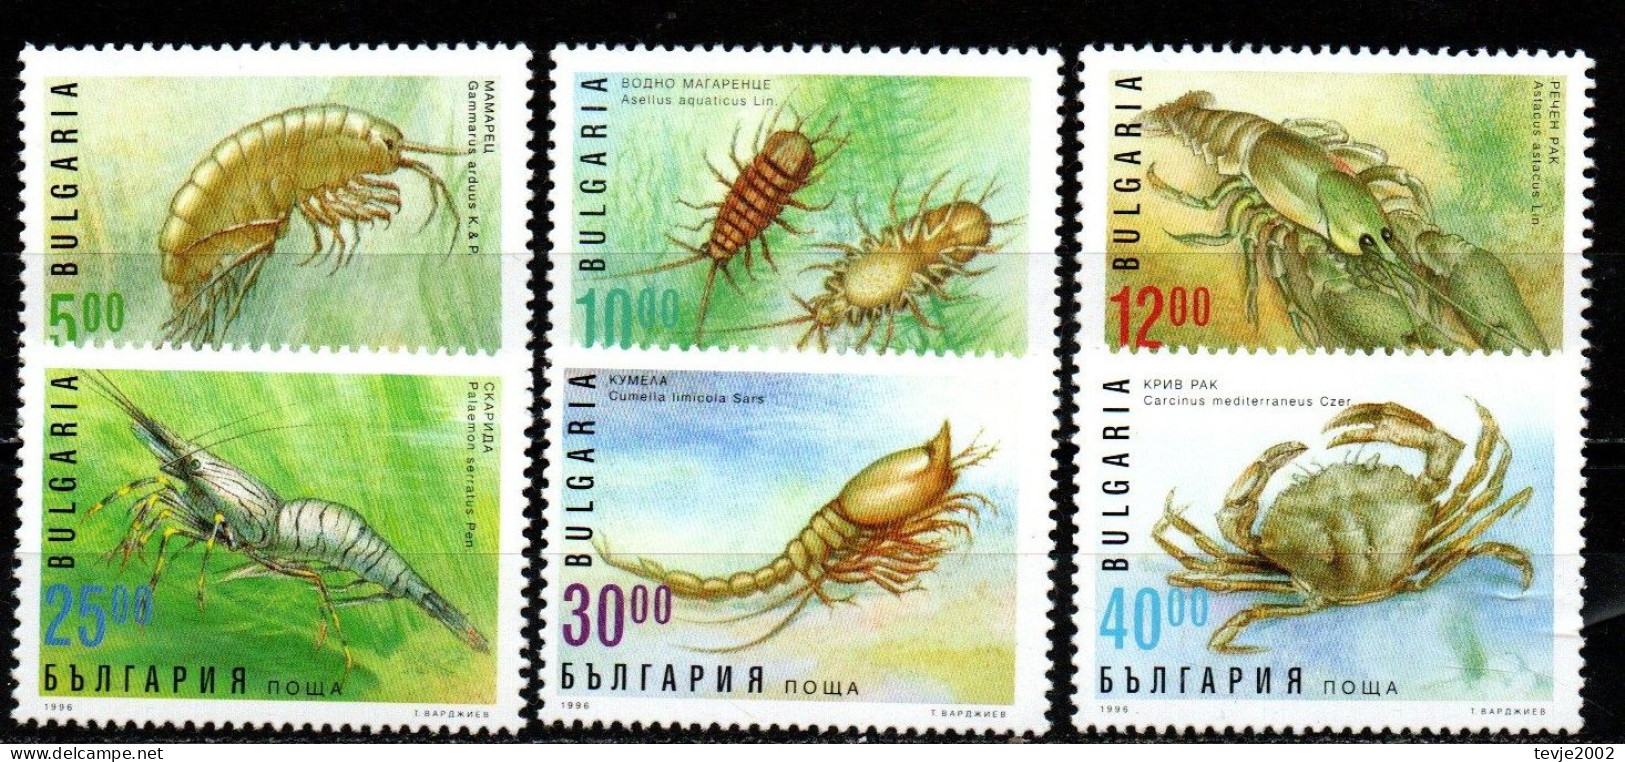 Bulgarien 1996 - Mi.Nr. 4238 - 4243 - Postfrisch MNH - Tiere Animals Krabben Crabs - Crustáceos